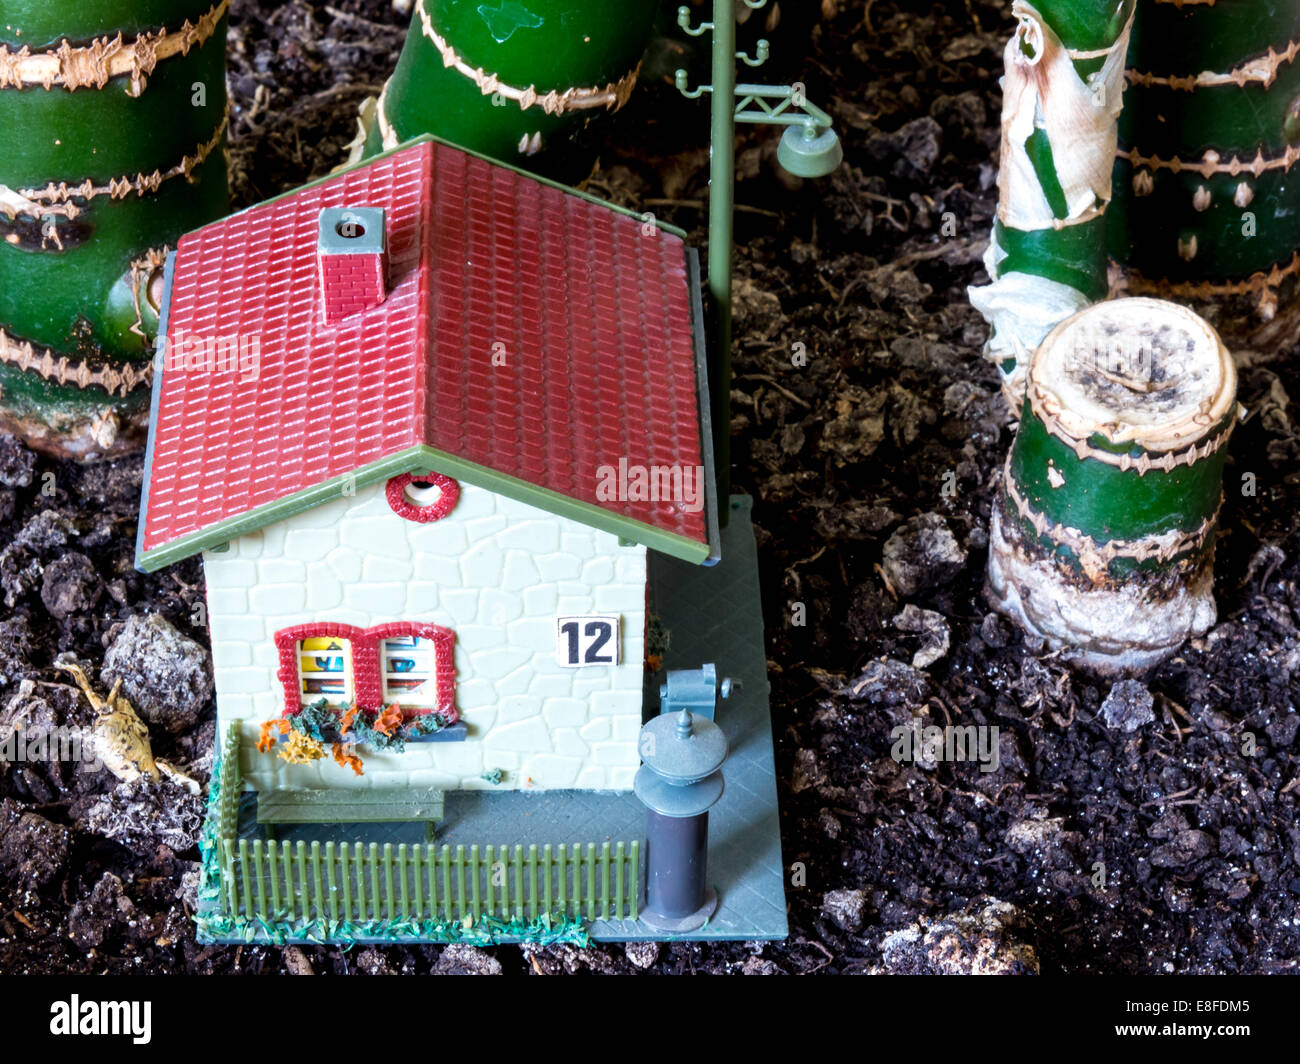 GOMEL, BELARUS - 21. August 2014: Miniatur Spielzeug, in der DDR gemacht. DDR ist Die deutsche Abkürzung für die Deutsche Demokratische Republik. Stockfoto